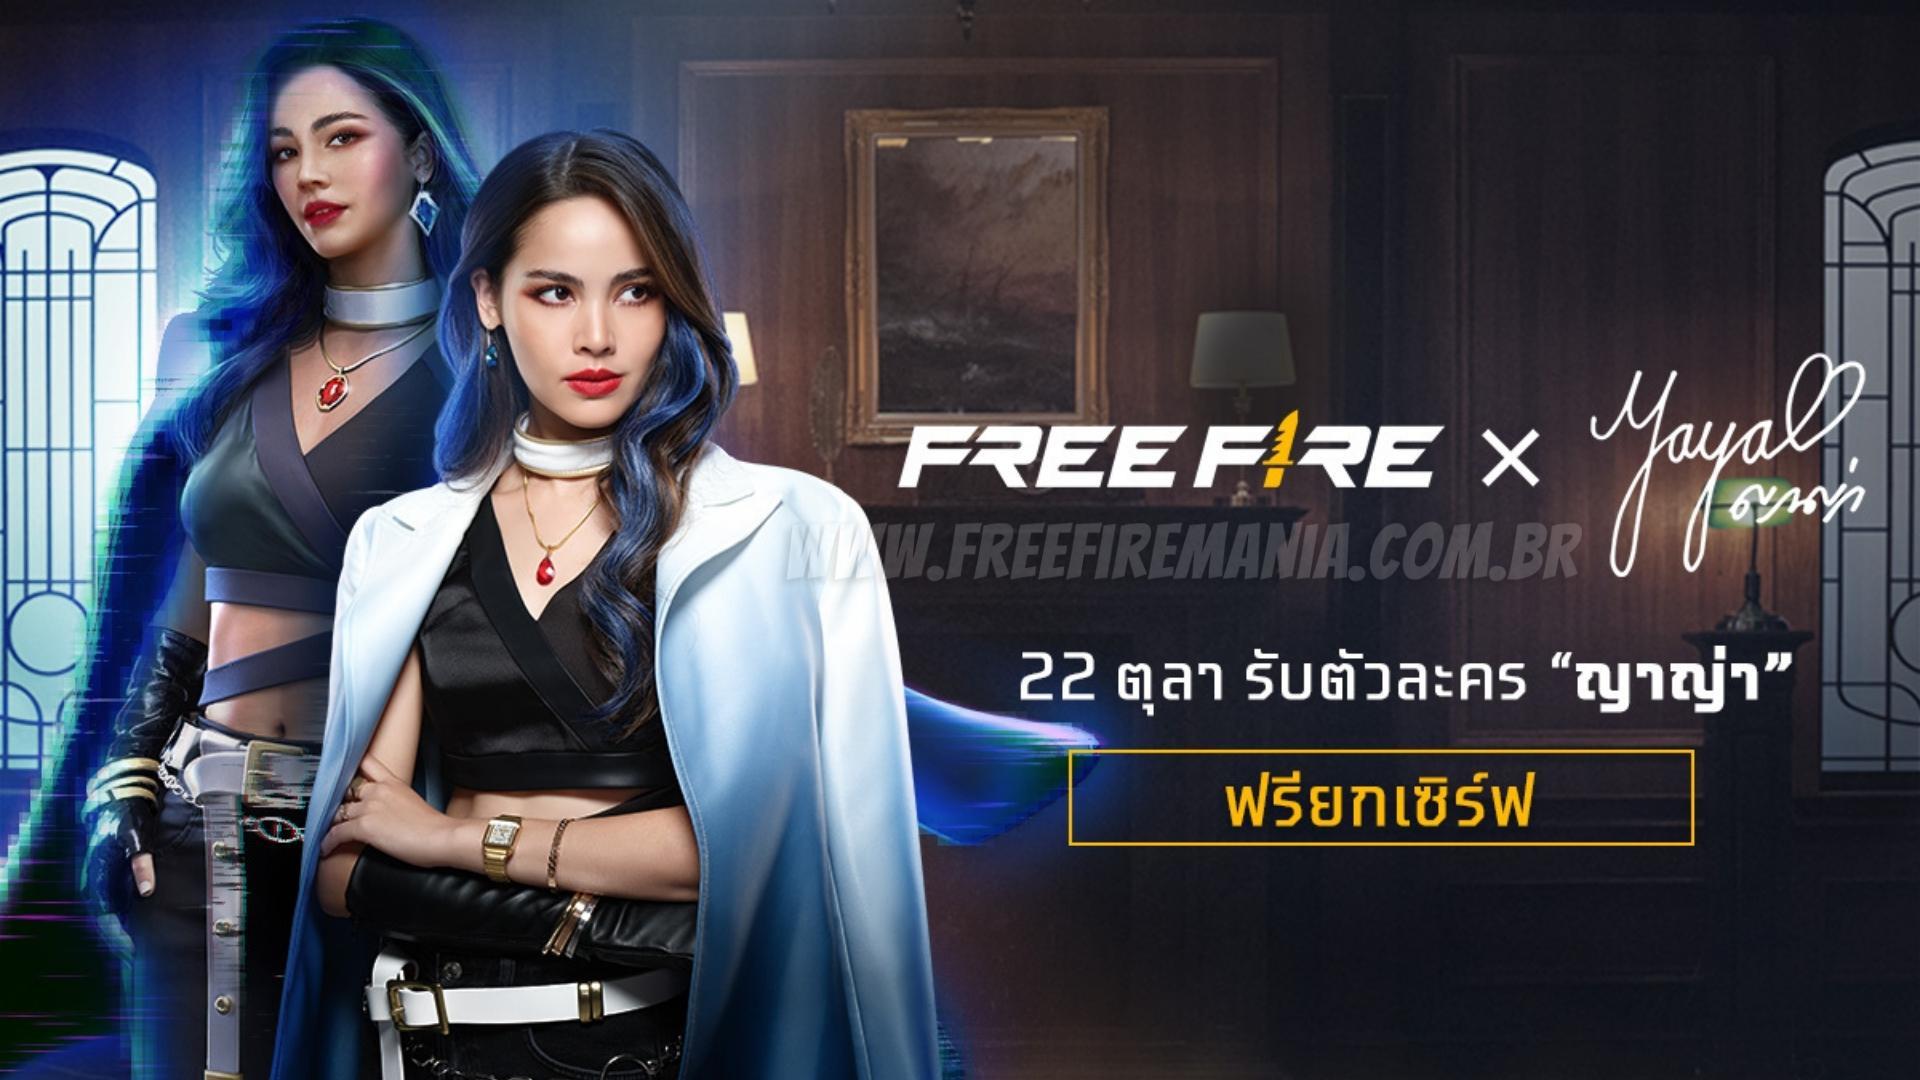 Free Fire anuncia novo personagem jogável baseado em um astro de Bollywood  